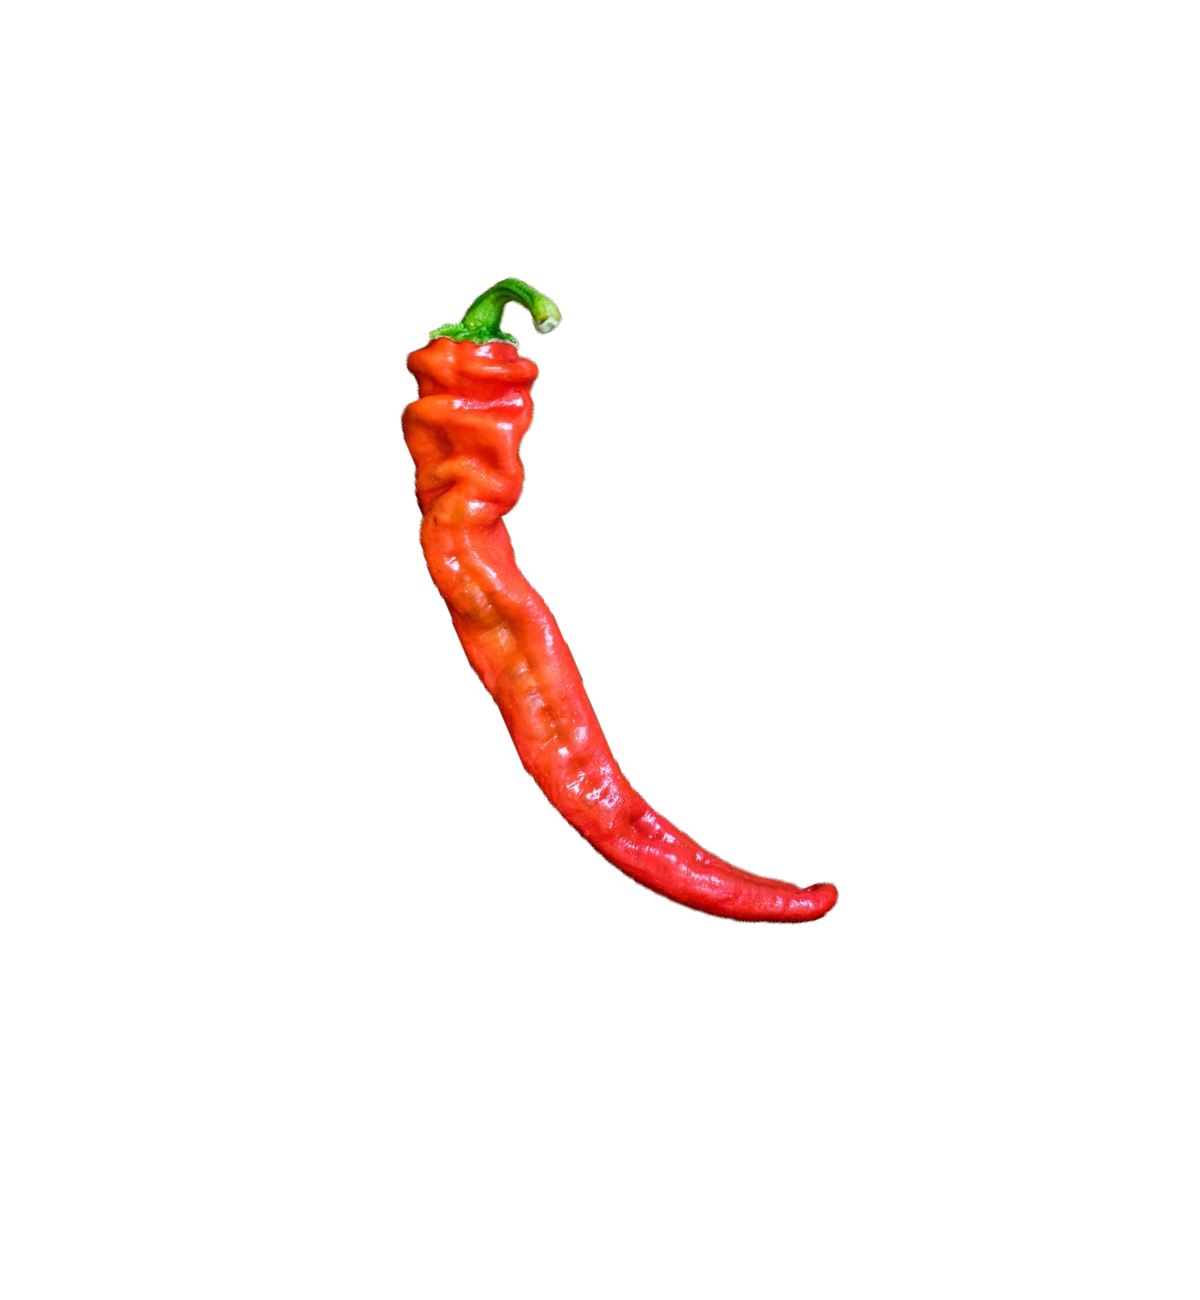 Hangjiao 5 Helix Nebula pepper